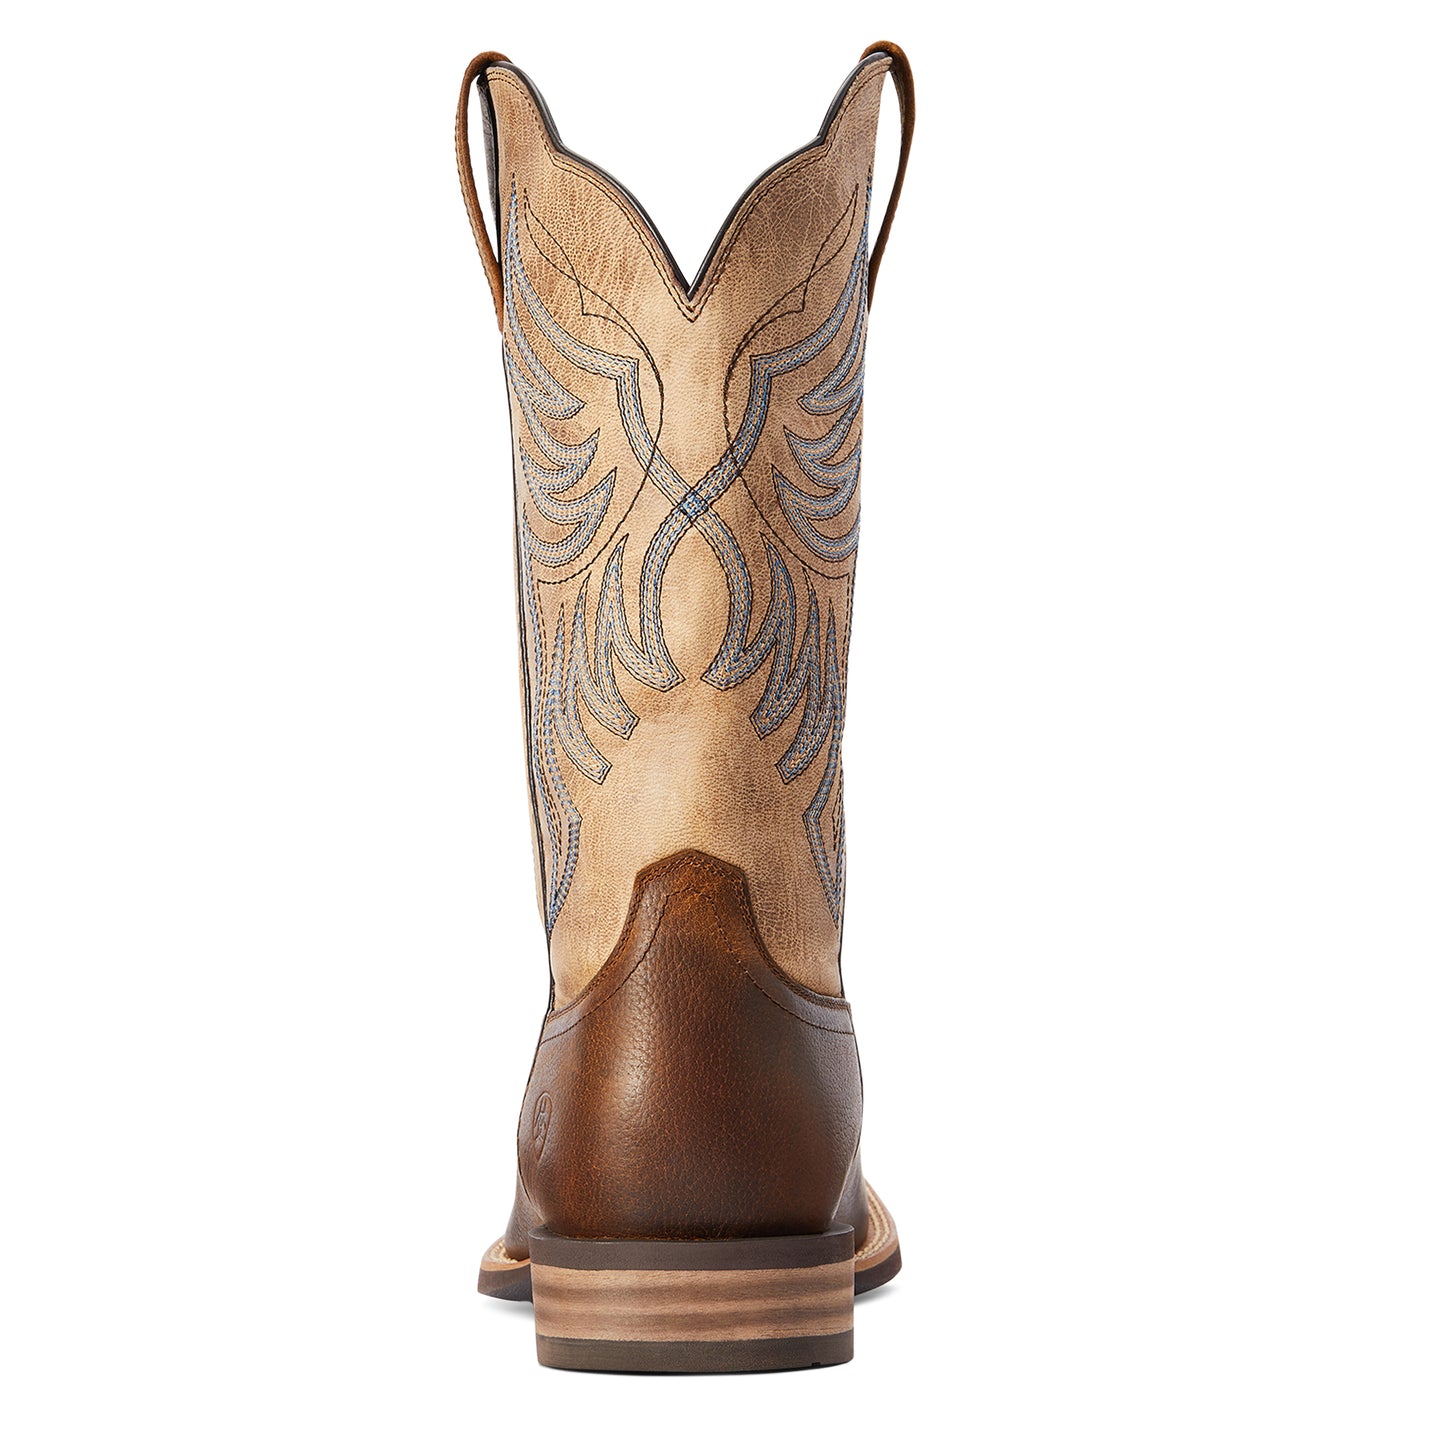 Ariat® Men's Everlite Blazin Wheat Brown Square Toe Boots 10042436